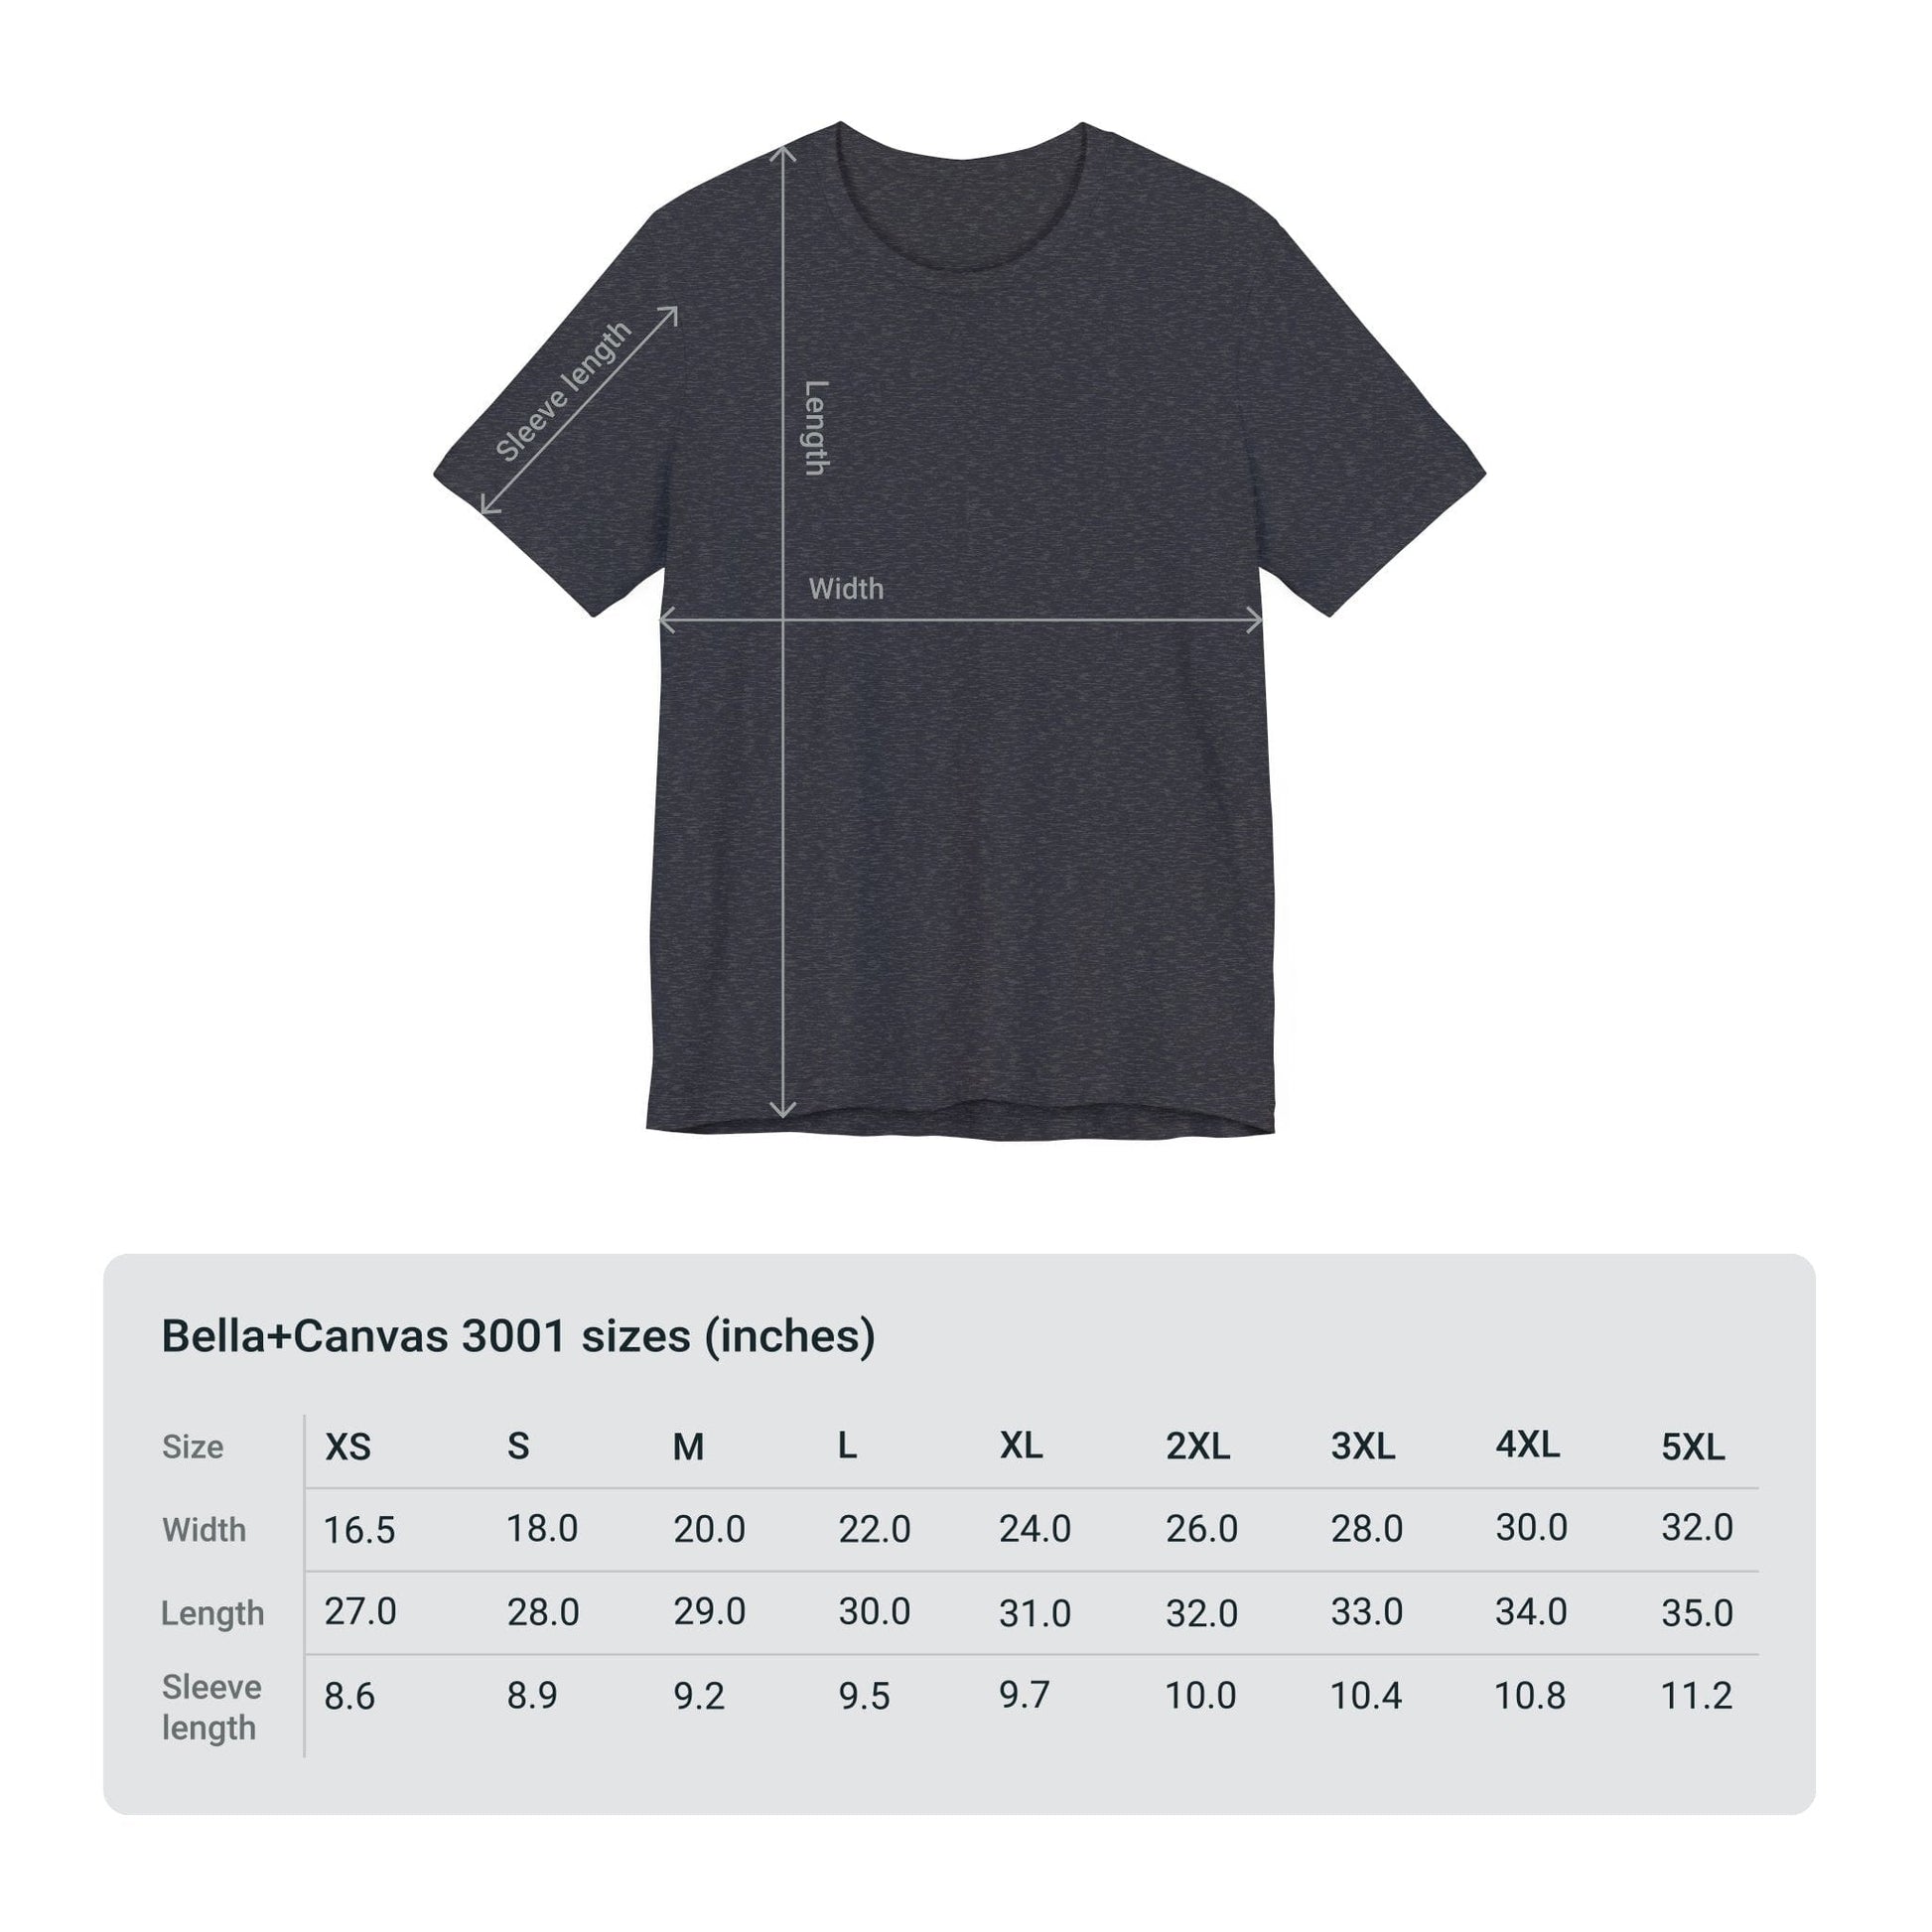 T-Shirt Sagittarius Sun Archer Soft T-Shirt: Aim High, Stand Out